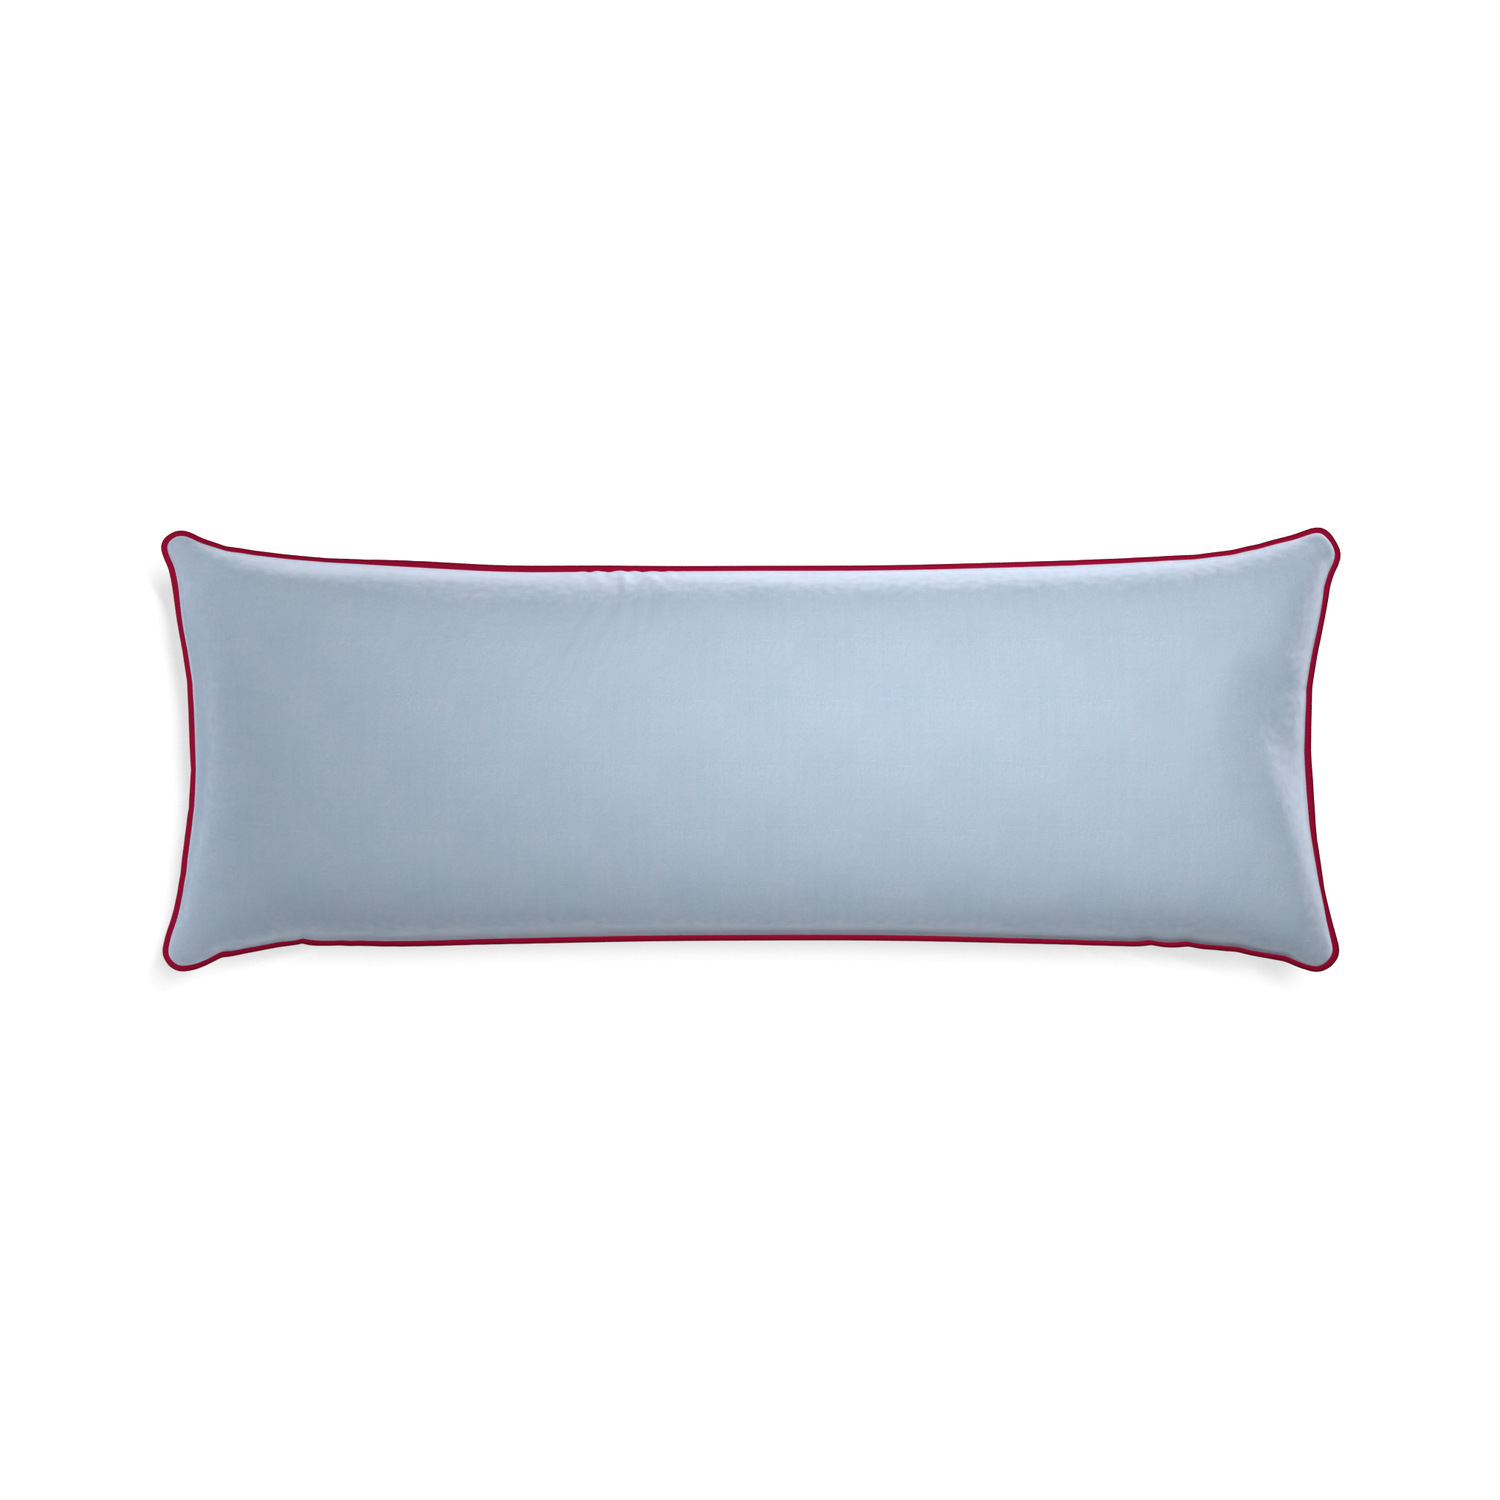 rectangle light blue velvet pillow with dark red piping 